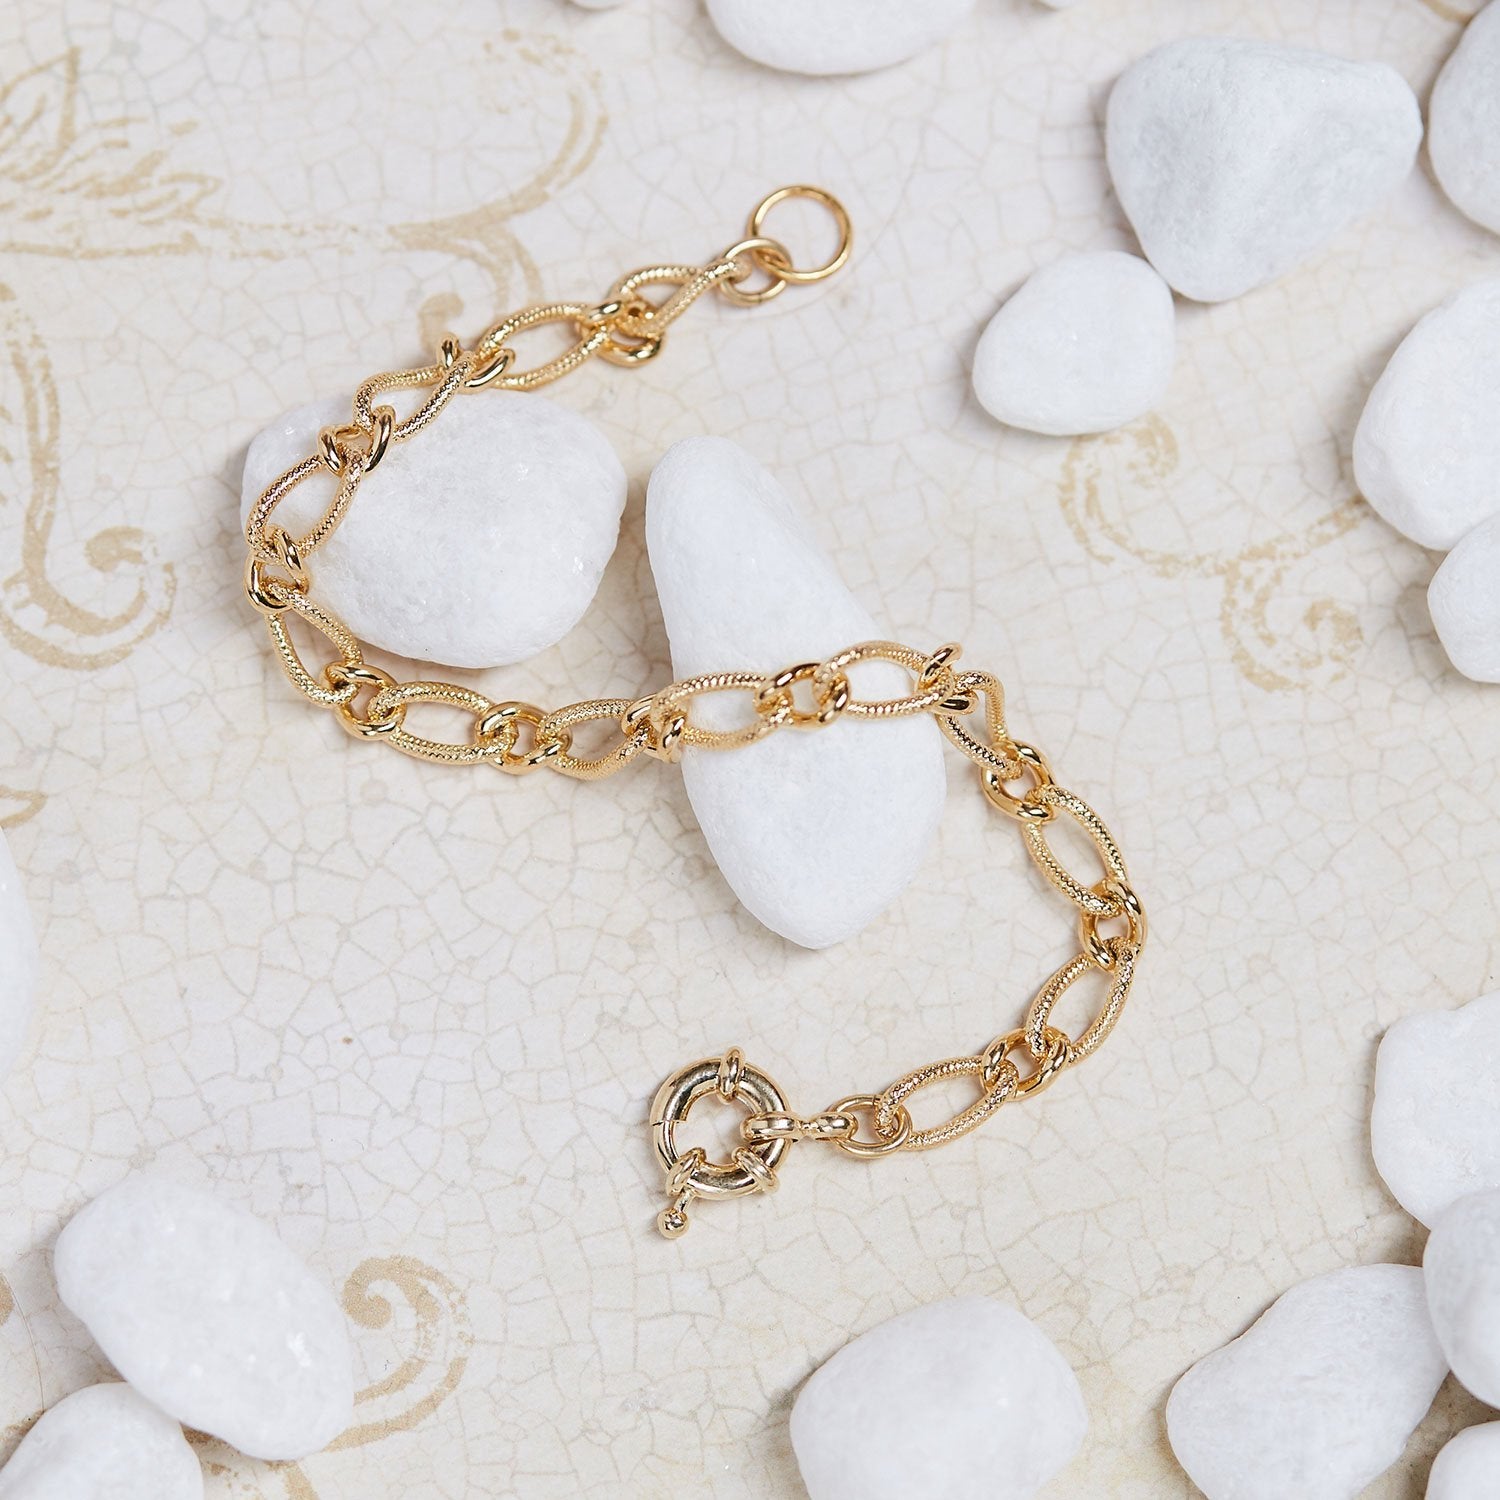 14k Gold Plated Fancy Figaro Chain Bracelet